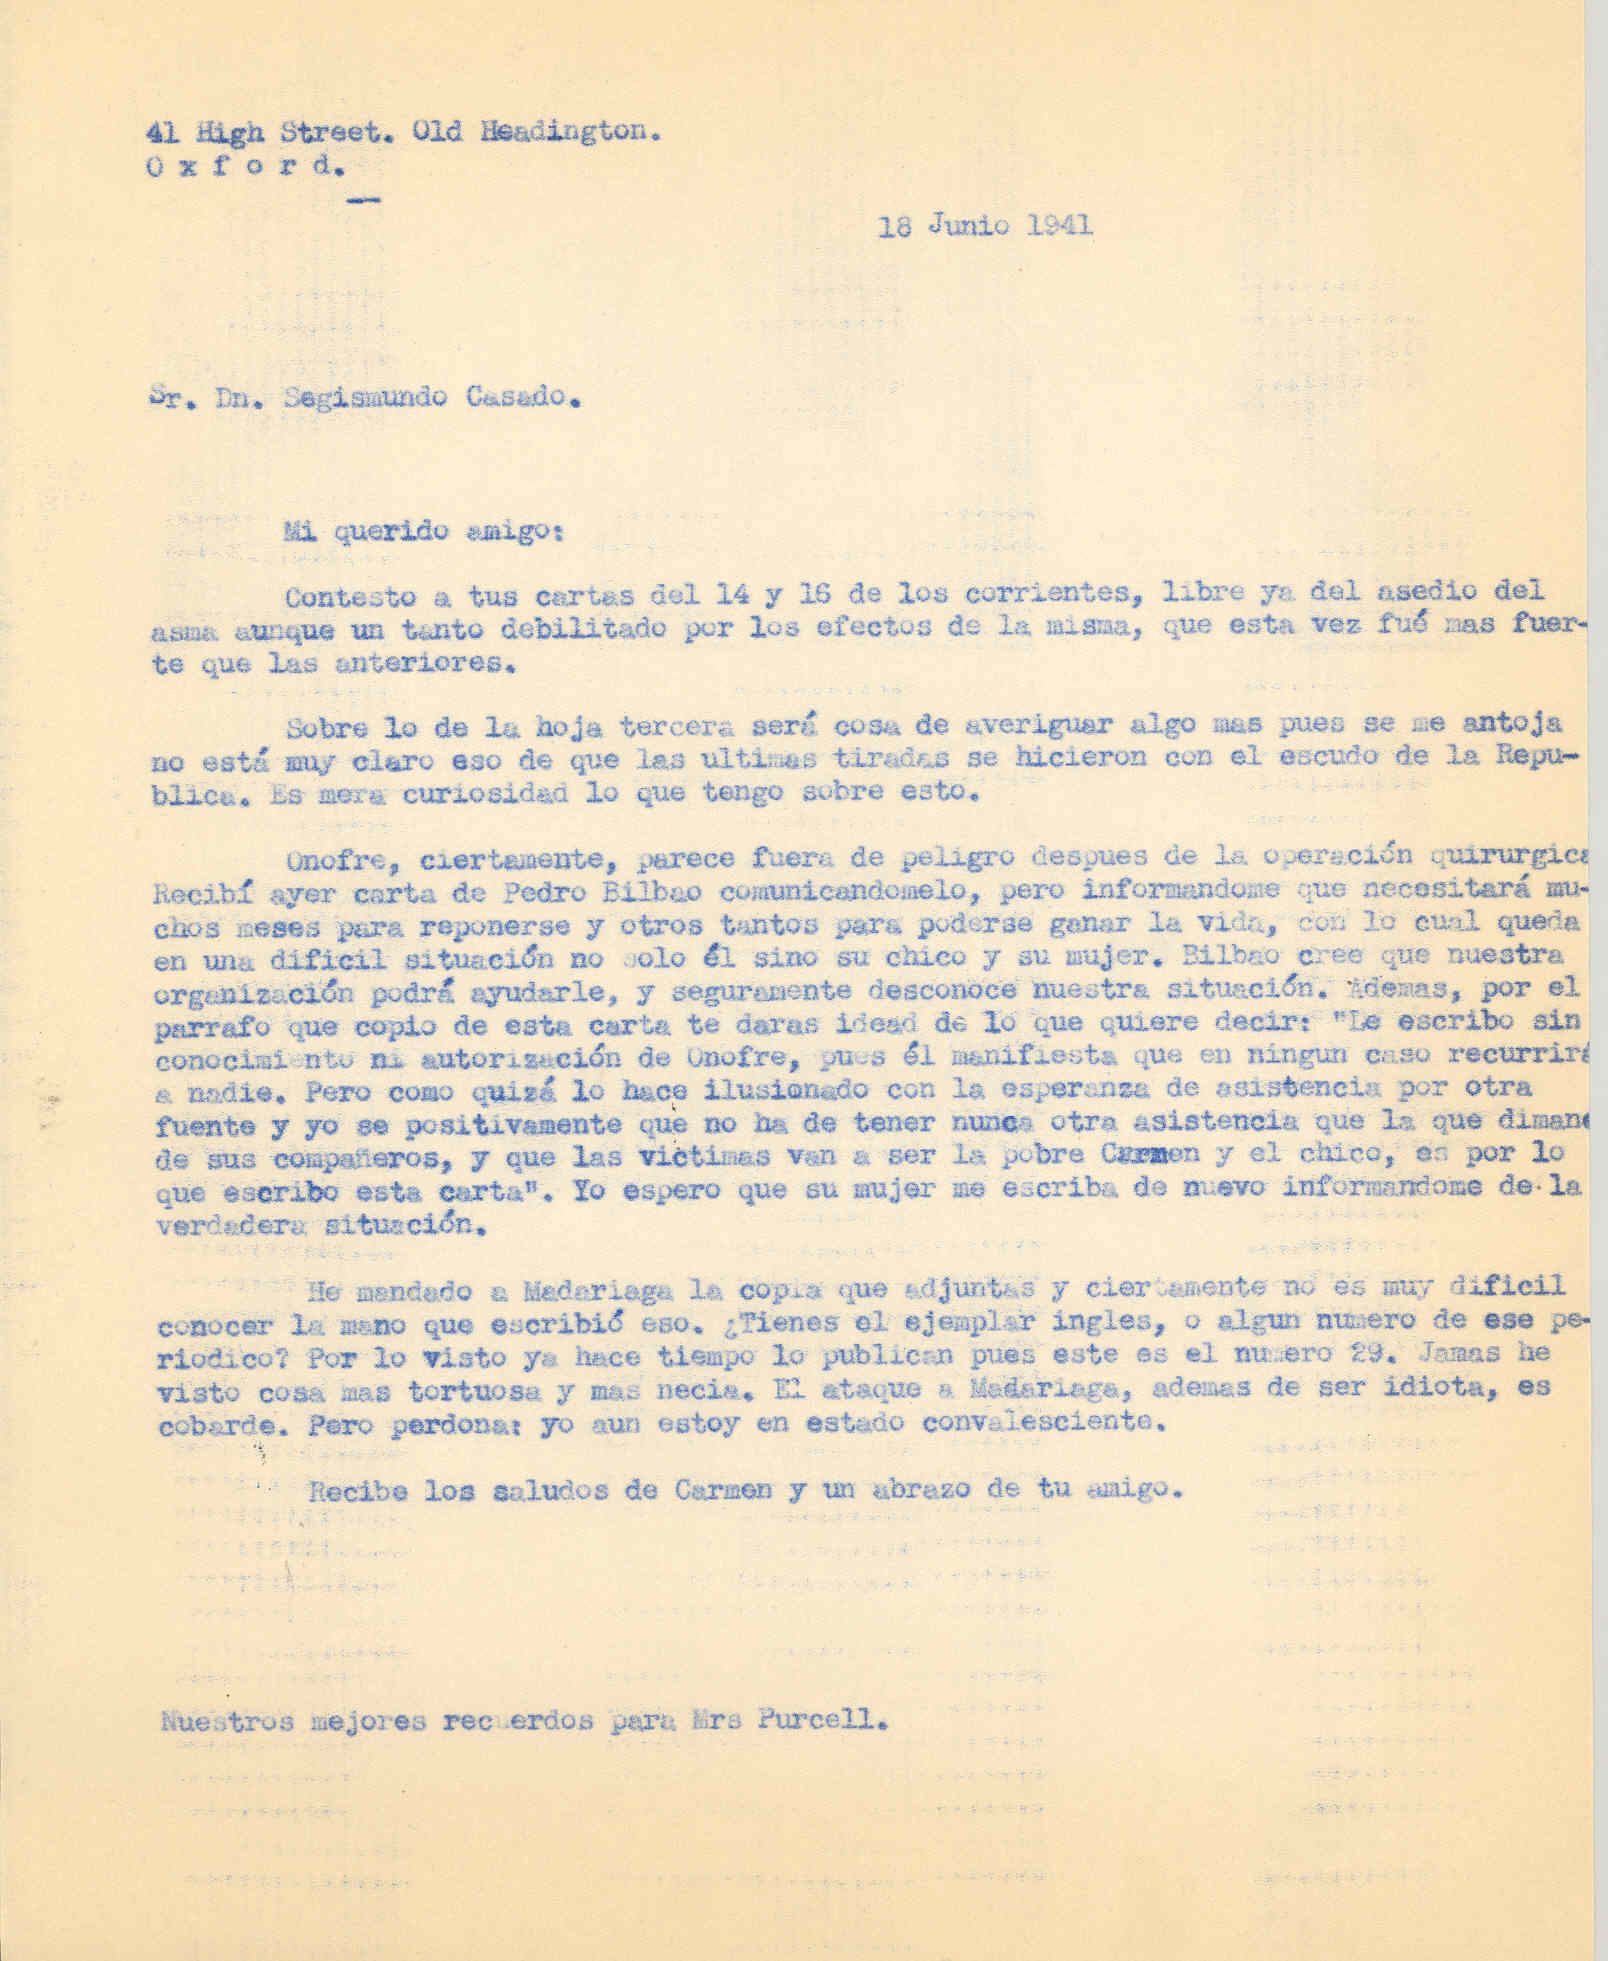 Carta a Segismundo Casado con la que describe el estado de salud de Onofre y comenta una publicación en contra de Madariaga de la que no se sabe su autor.